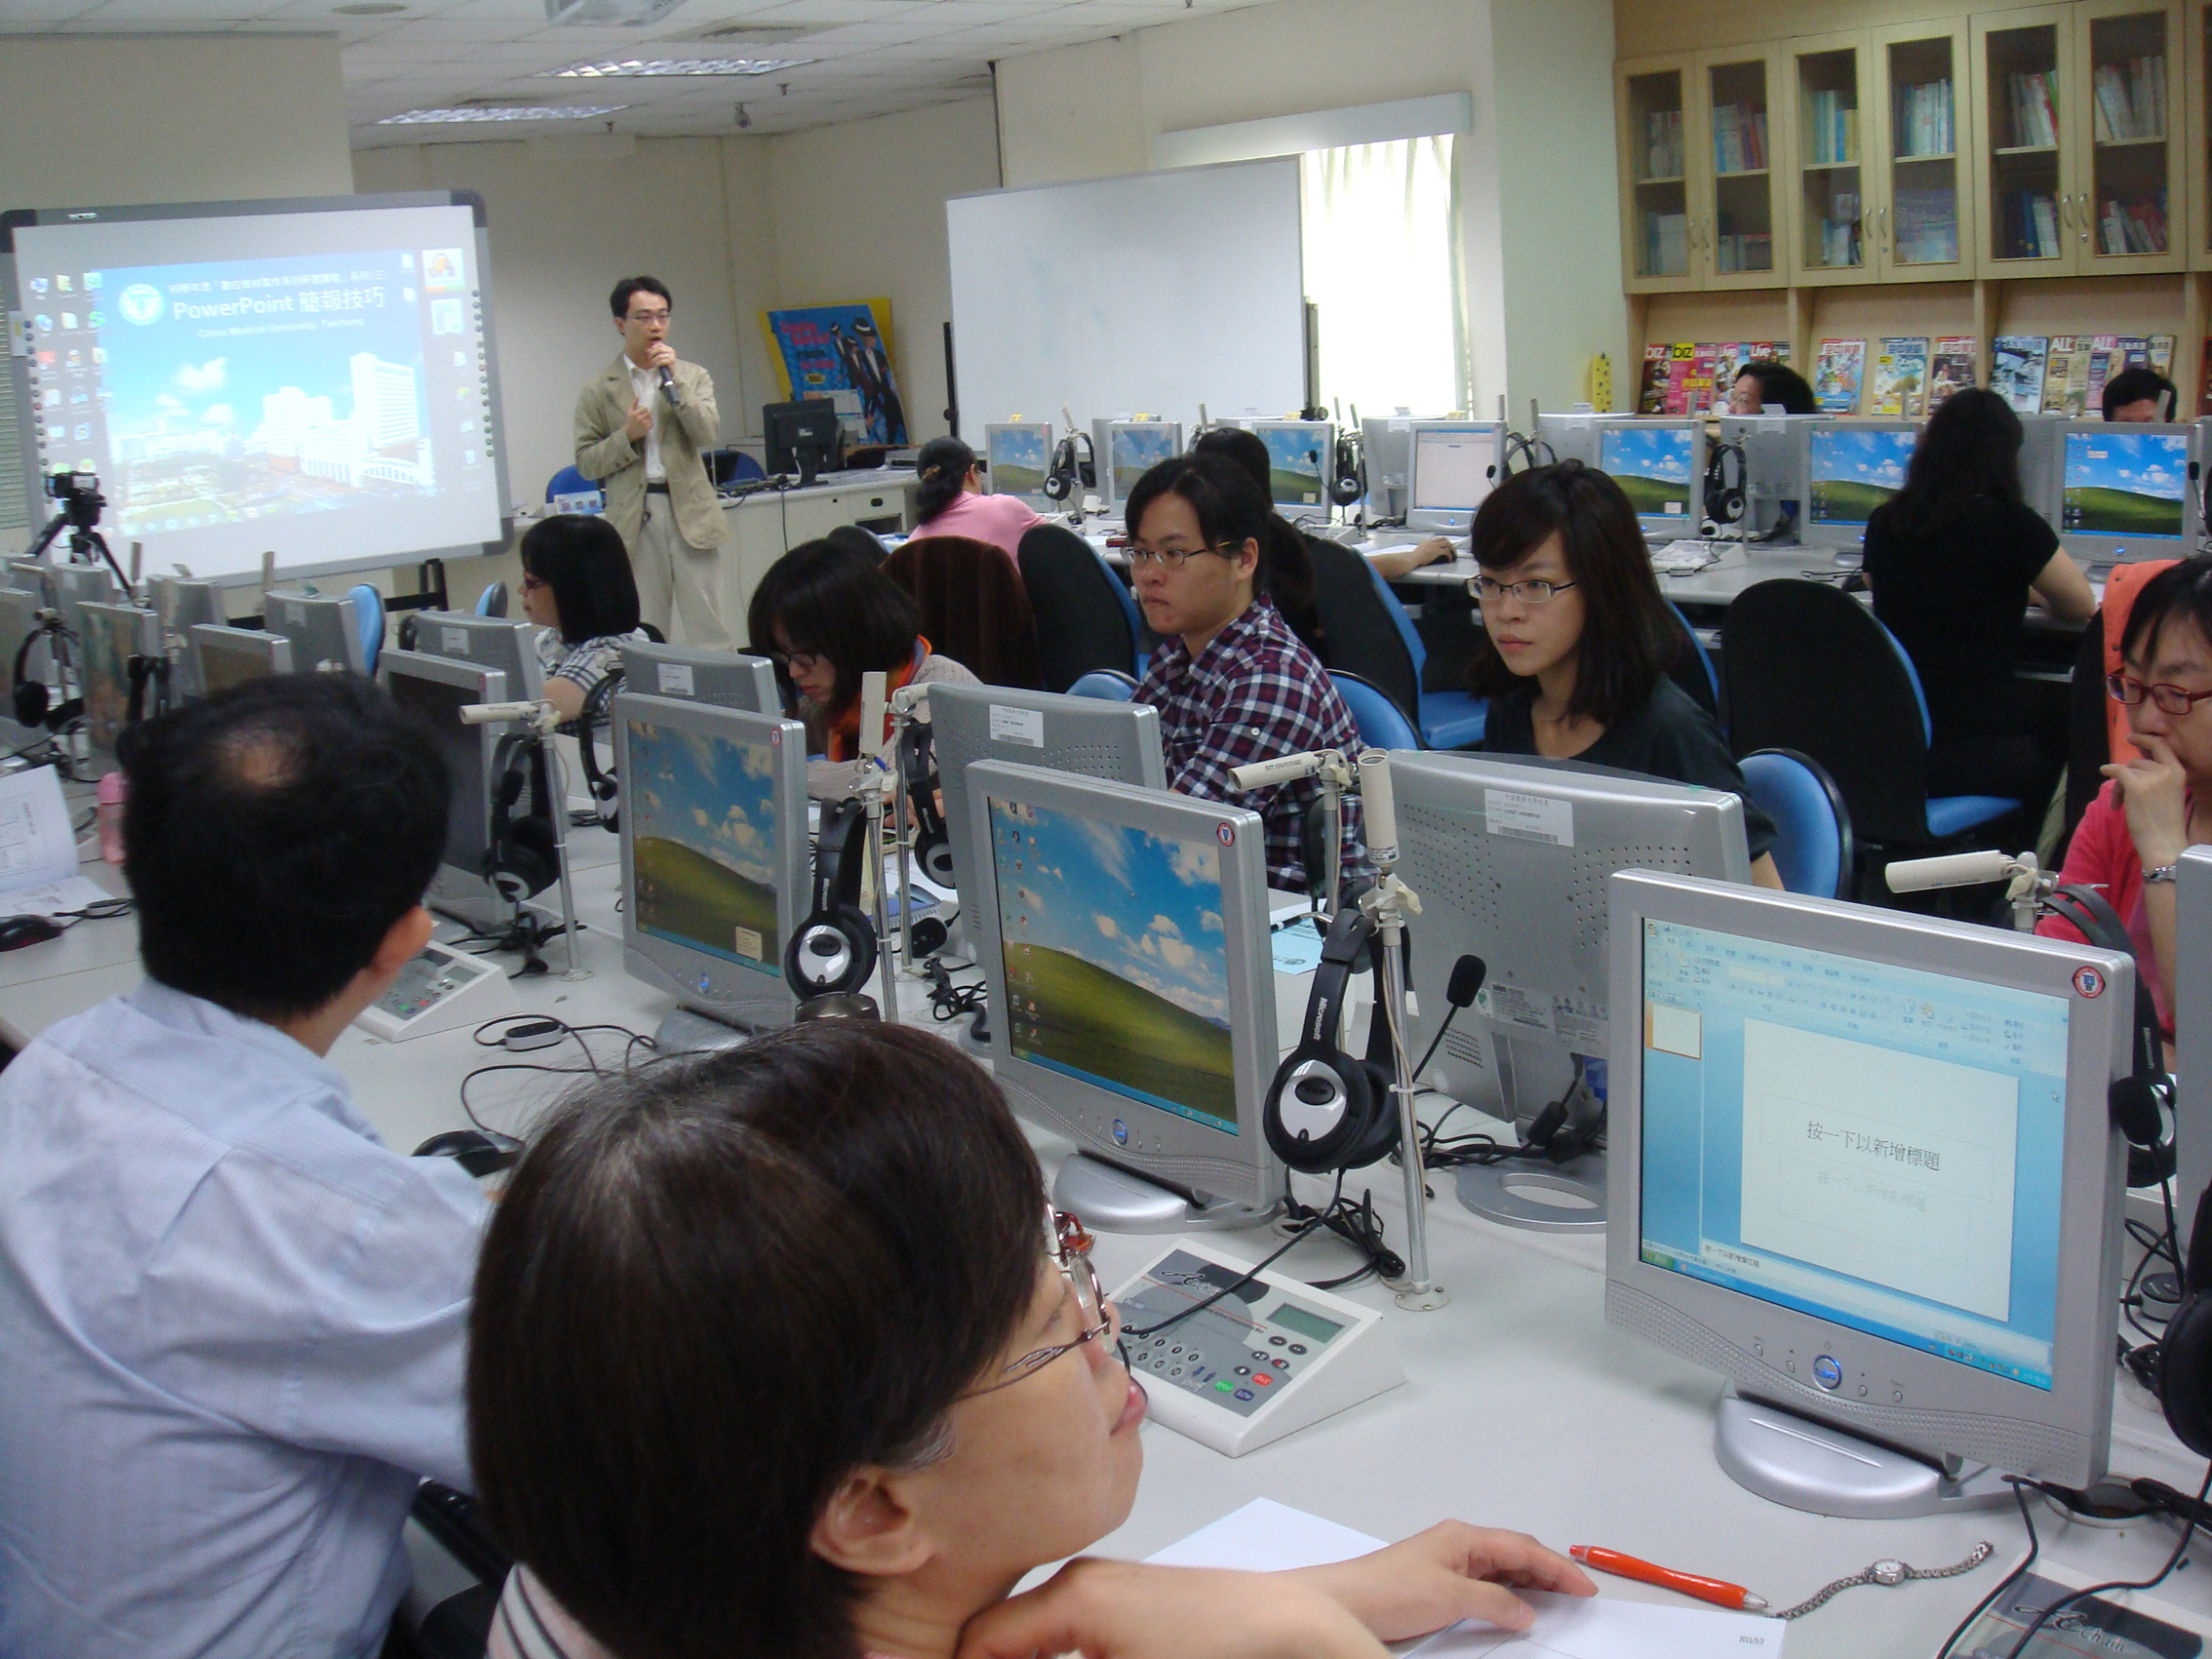 5/4POWERPOINT簡報技巧課程由長泓資訊公司的胡哲維 講師講授